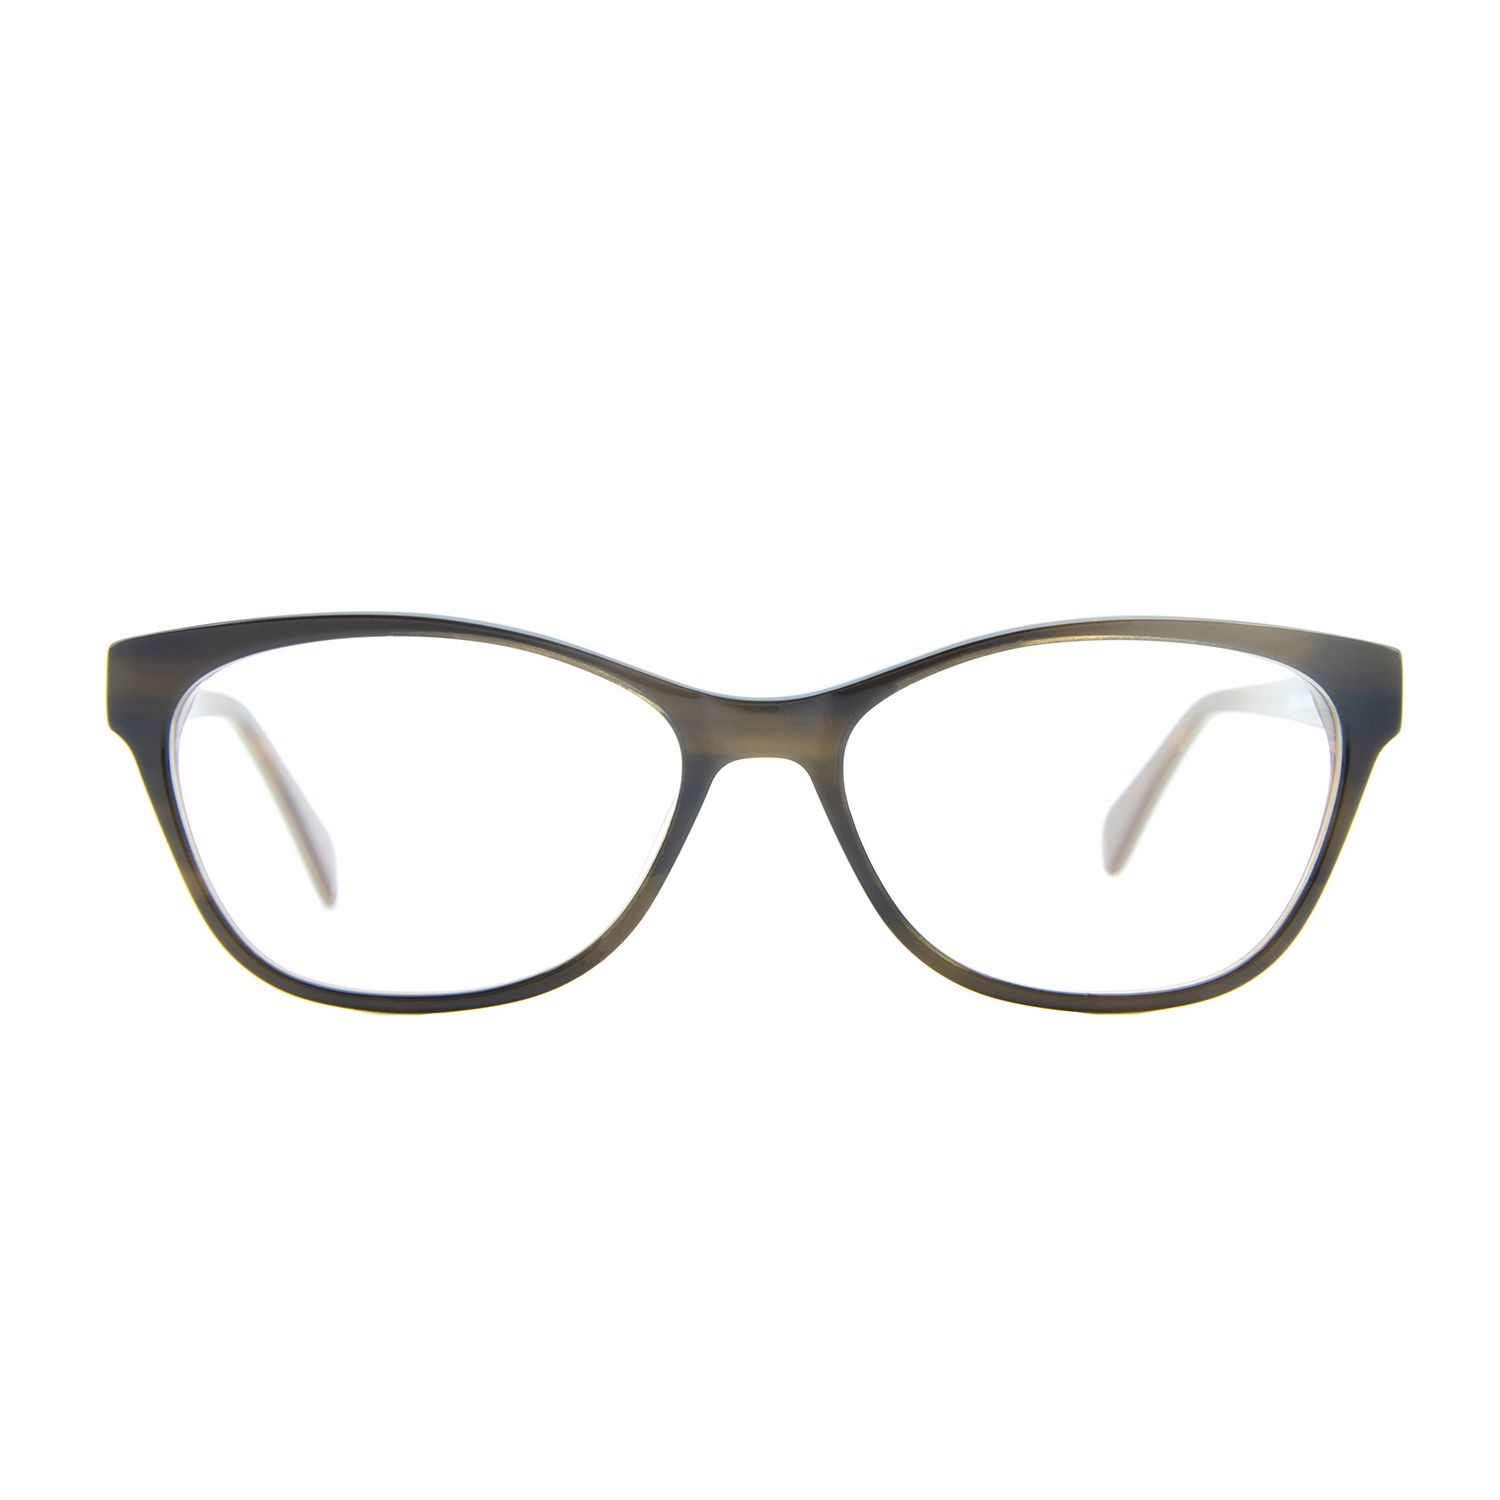 فریم عینک طبی ام اند او مدل Fia-c3 -  - 2